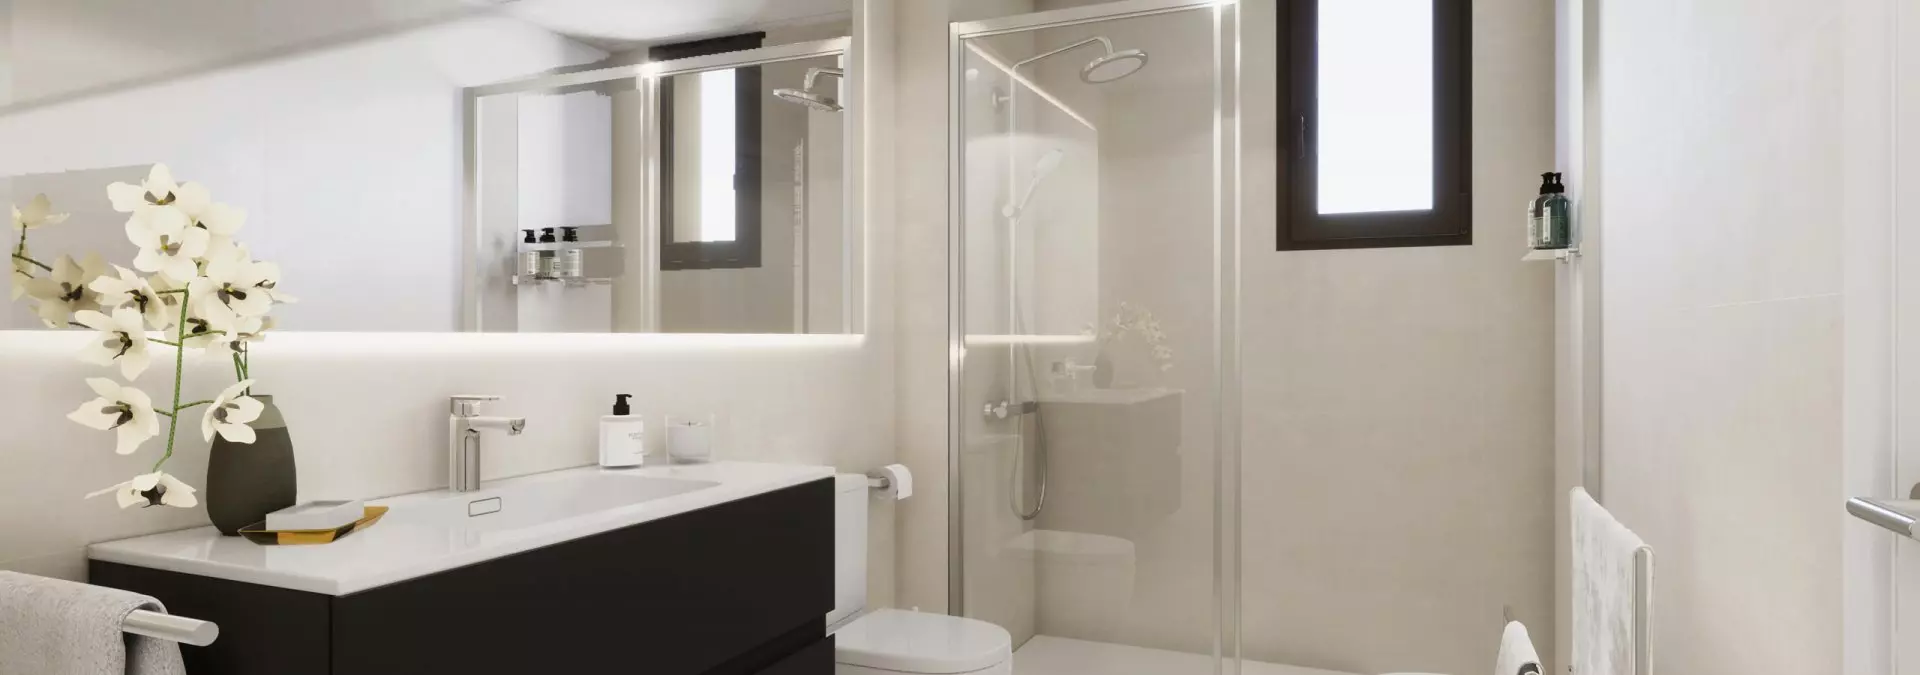 Baño habitación suite en Rocafort de CULMIA